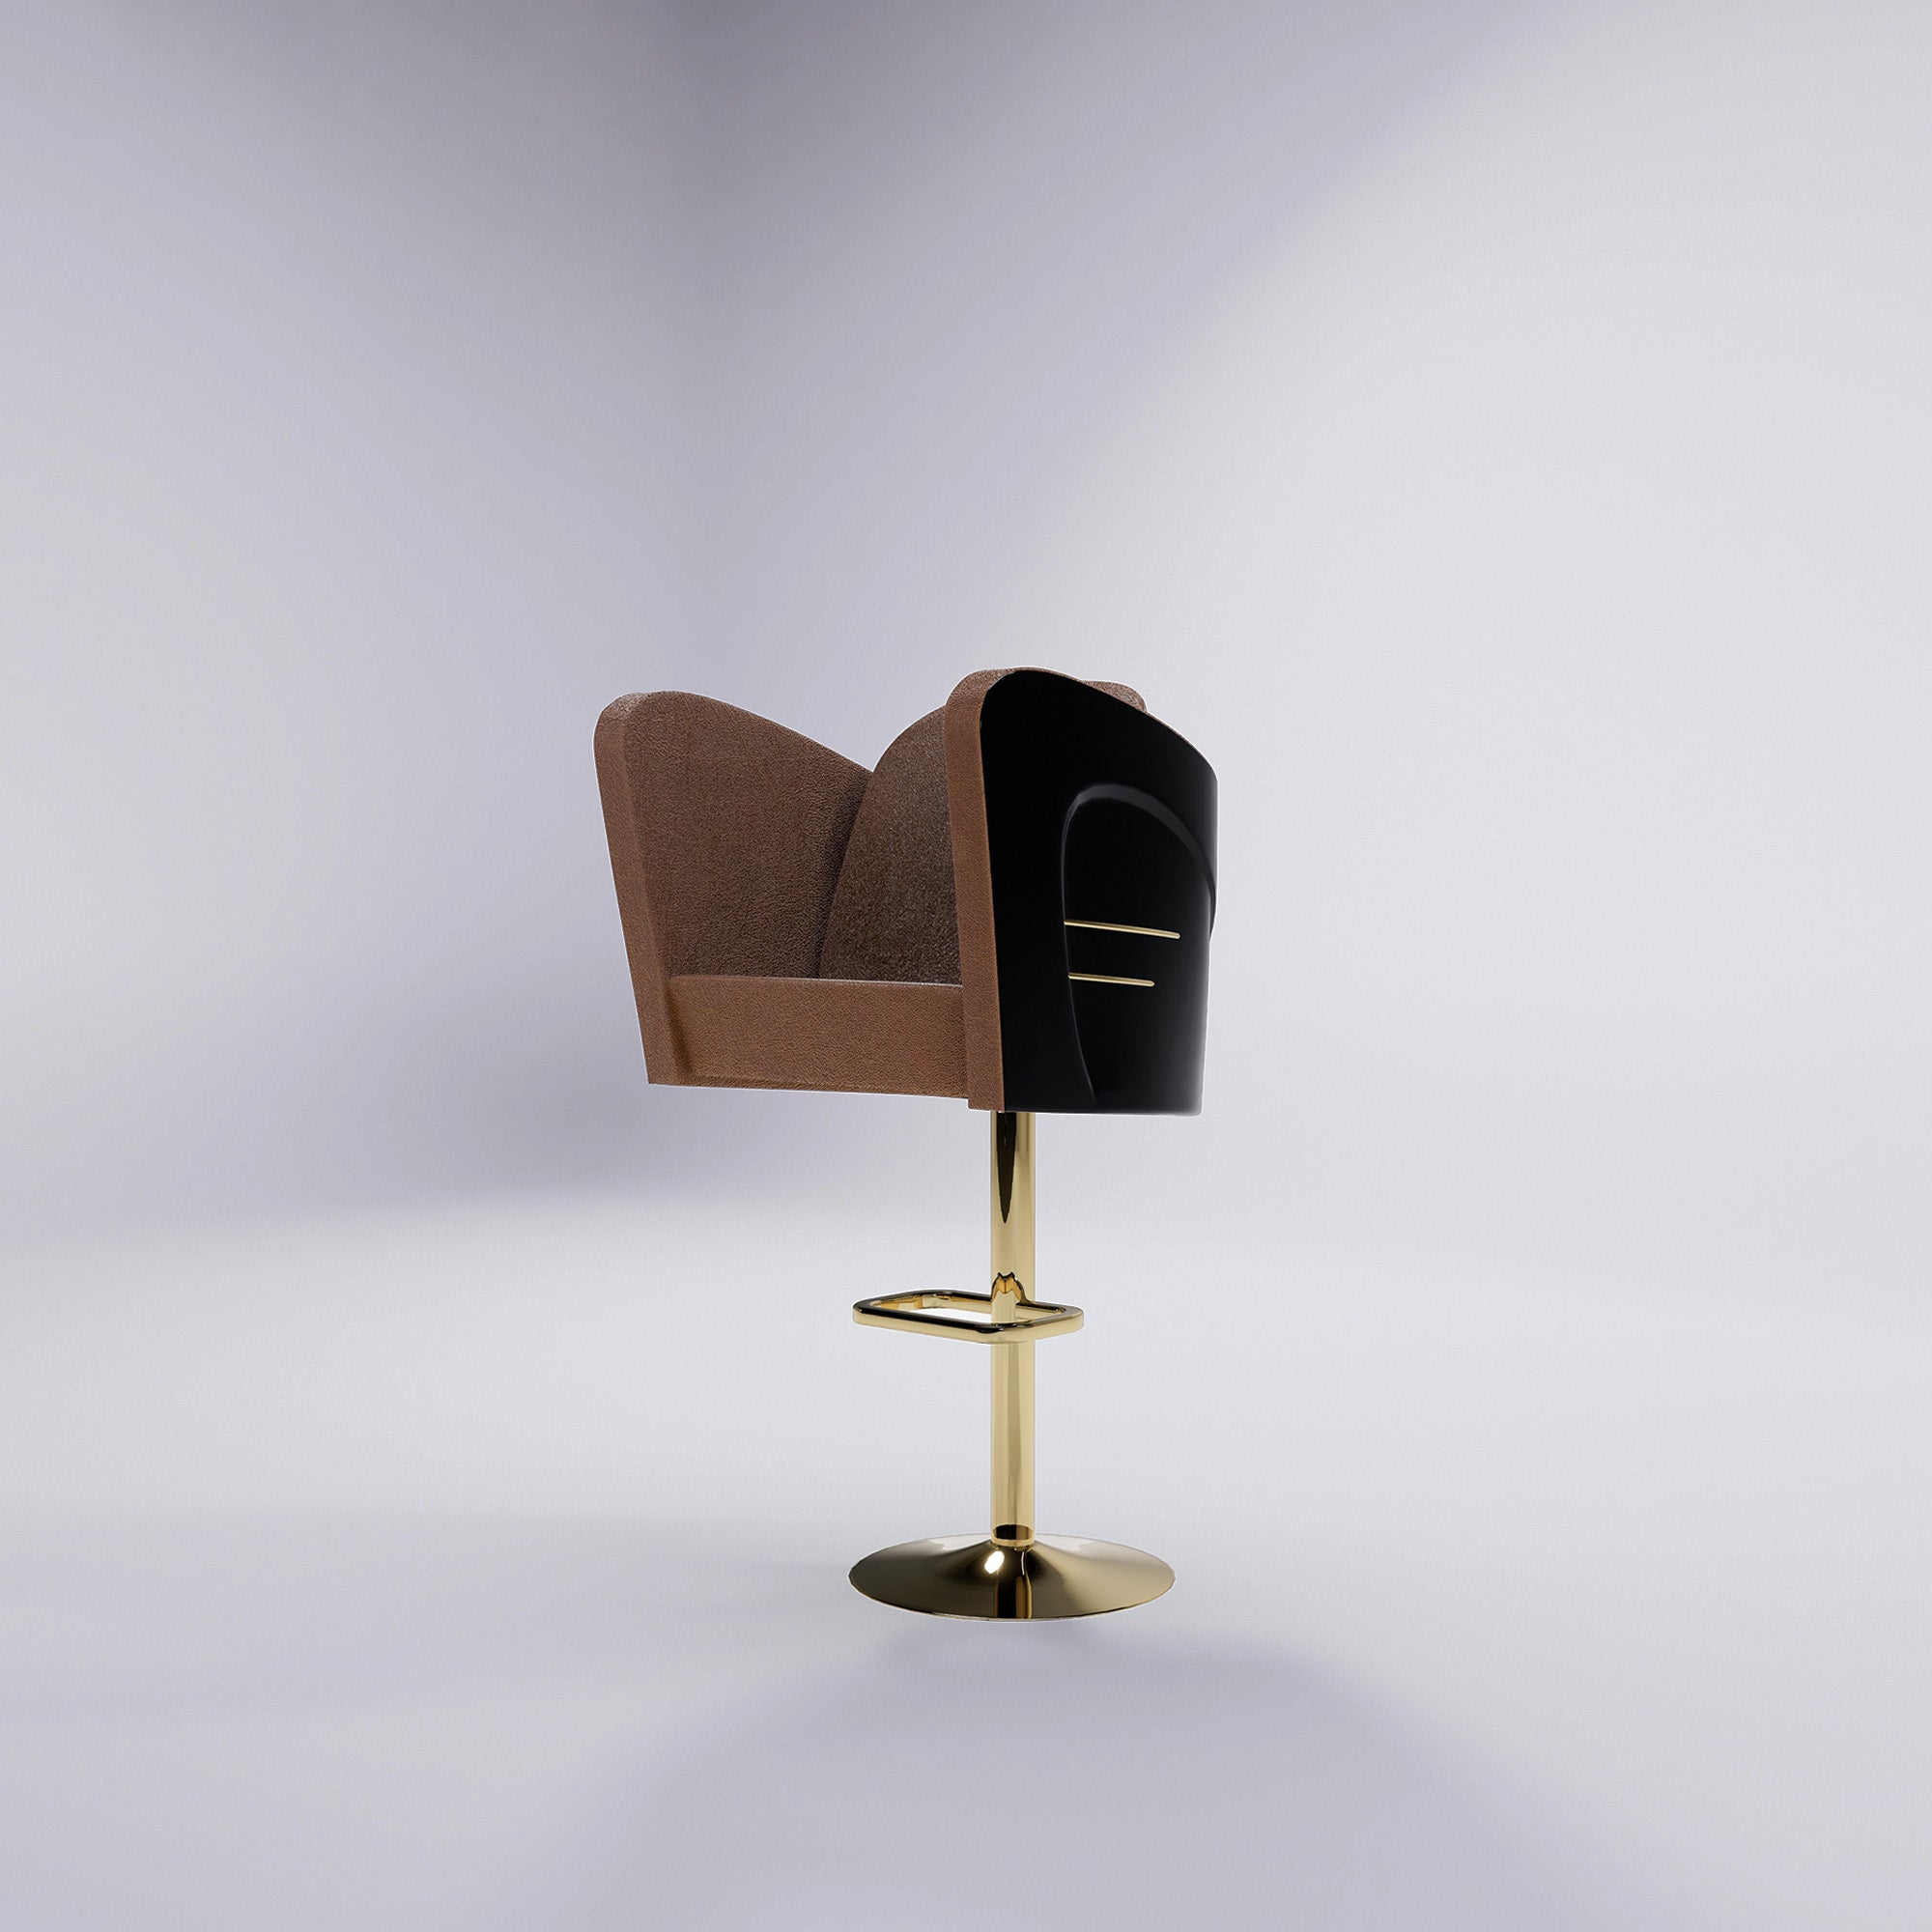 Veron Bar Chair